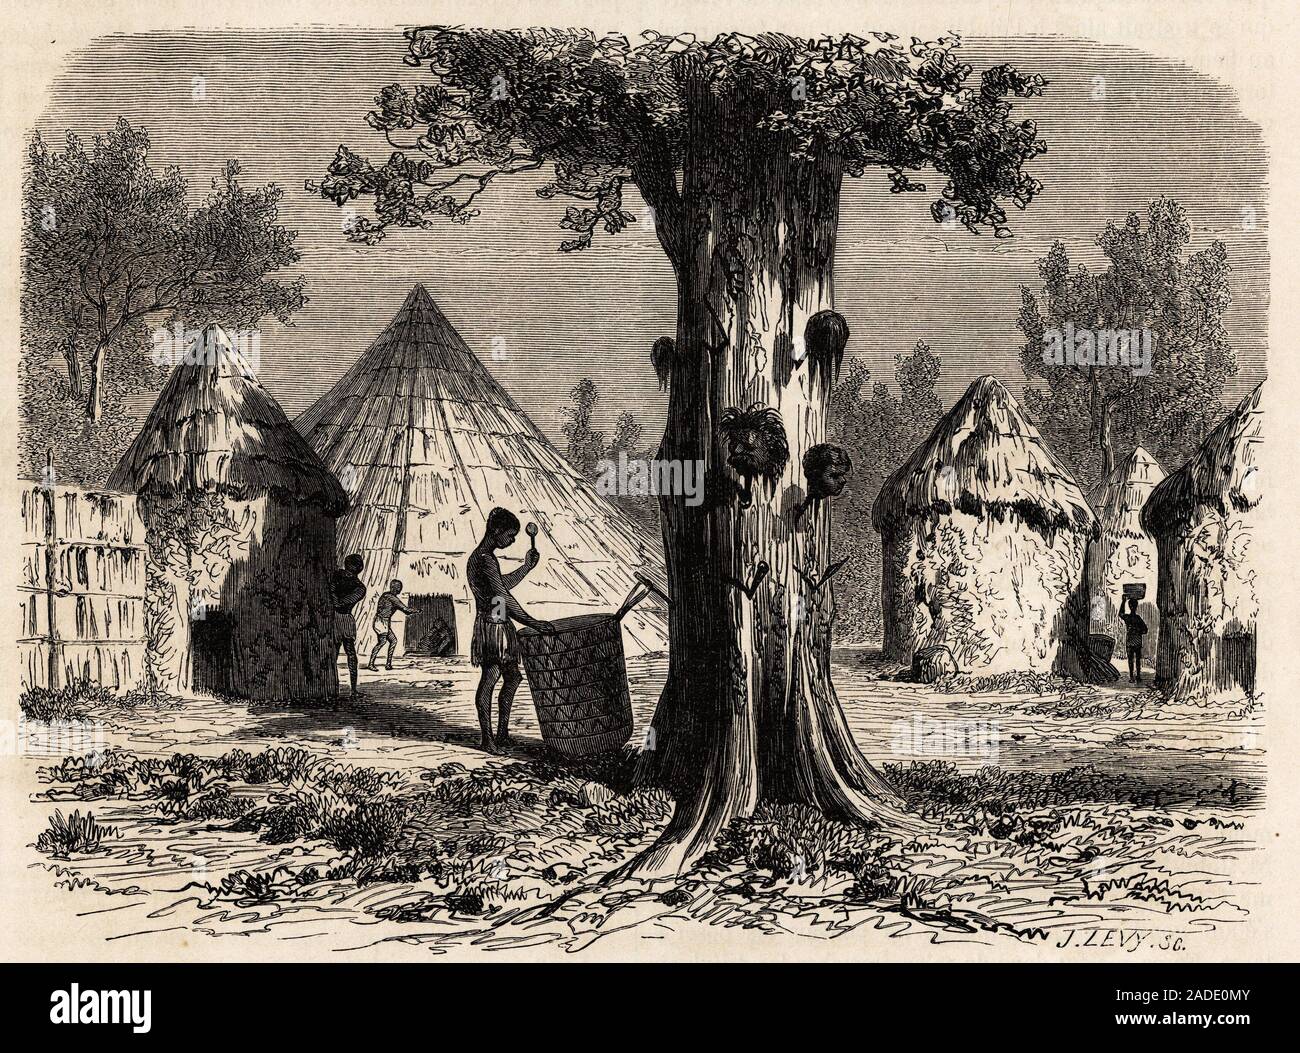 L'arbre de la guerre, dans un village Djour, region de Bahr-el-Gazal ( Bahr el Gazal) au Soudan, dessin de Karl Girardet (1813-1871) pour illustrer le Stock Photo